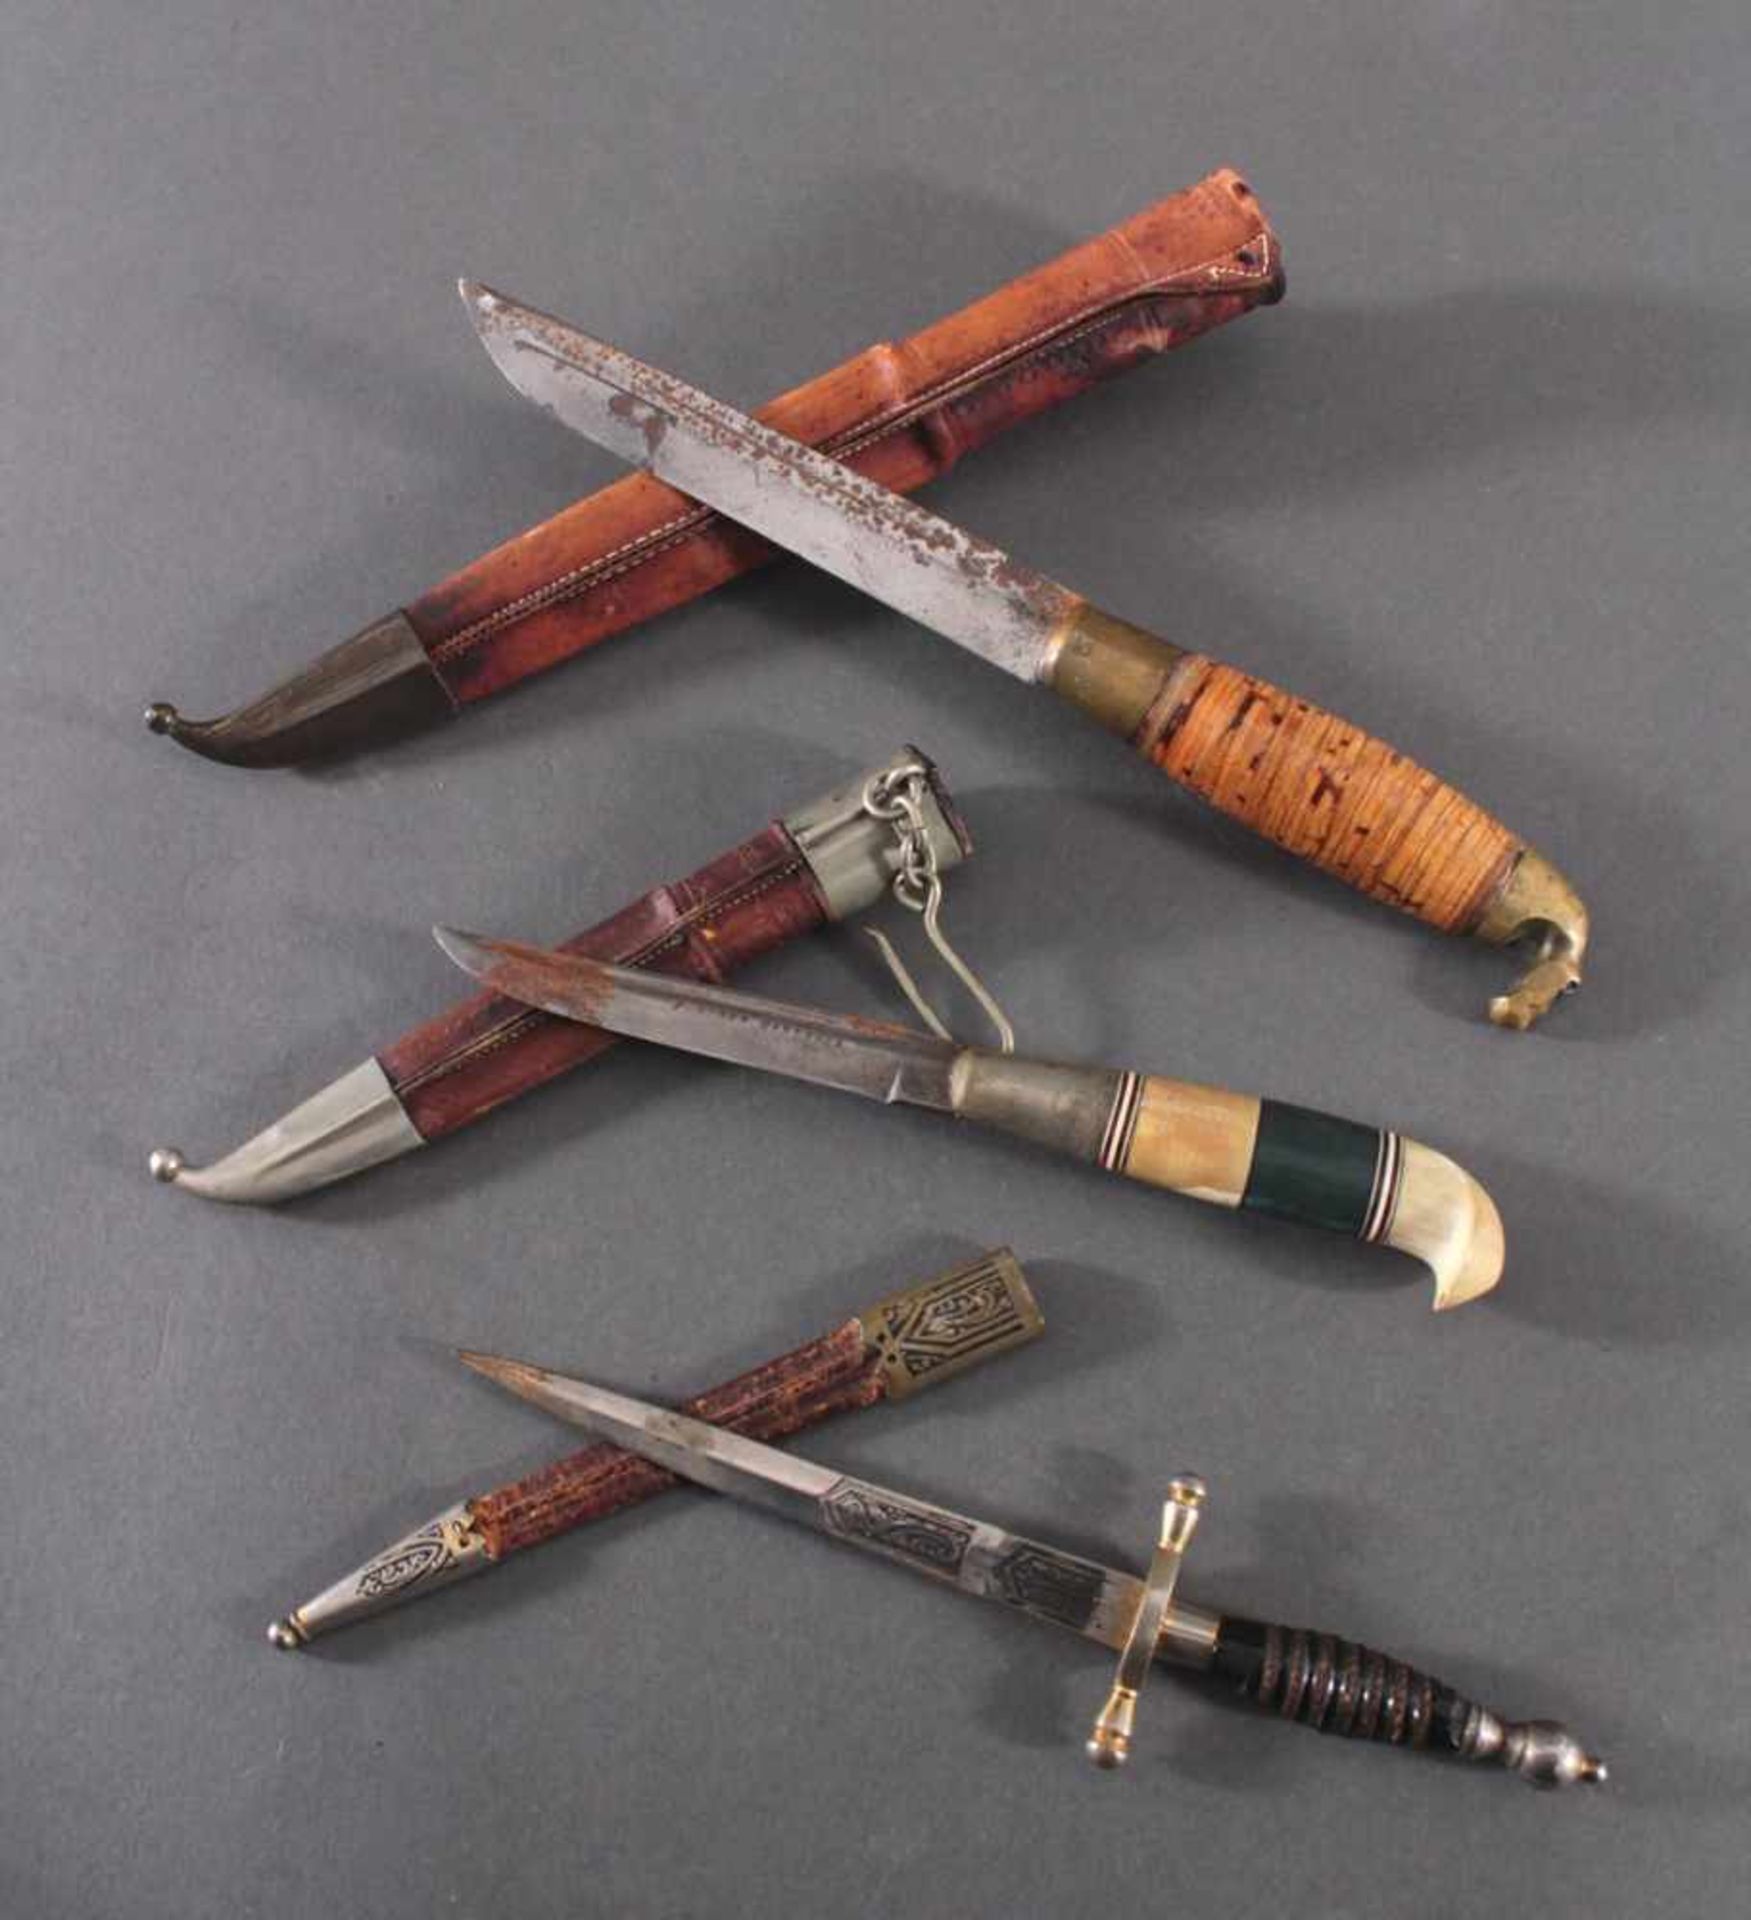 3 Messer2 Messer mit verzierter Klinge, Lederscheide mit Metallaplikationen, Griffe aus Bakelit,